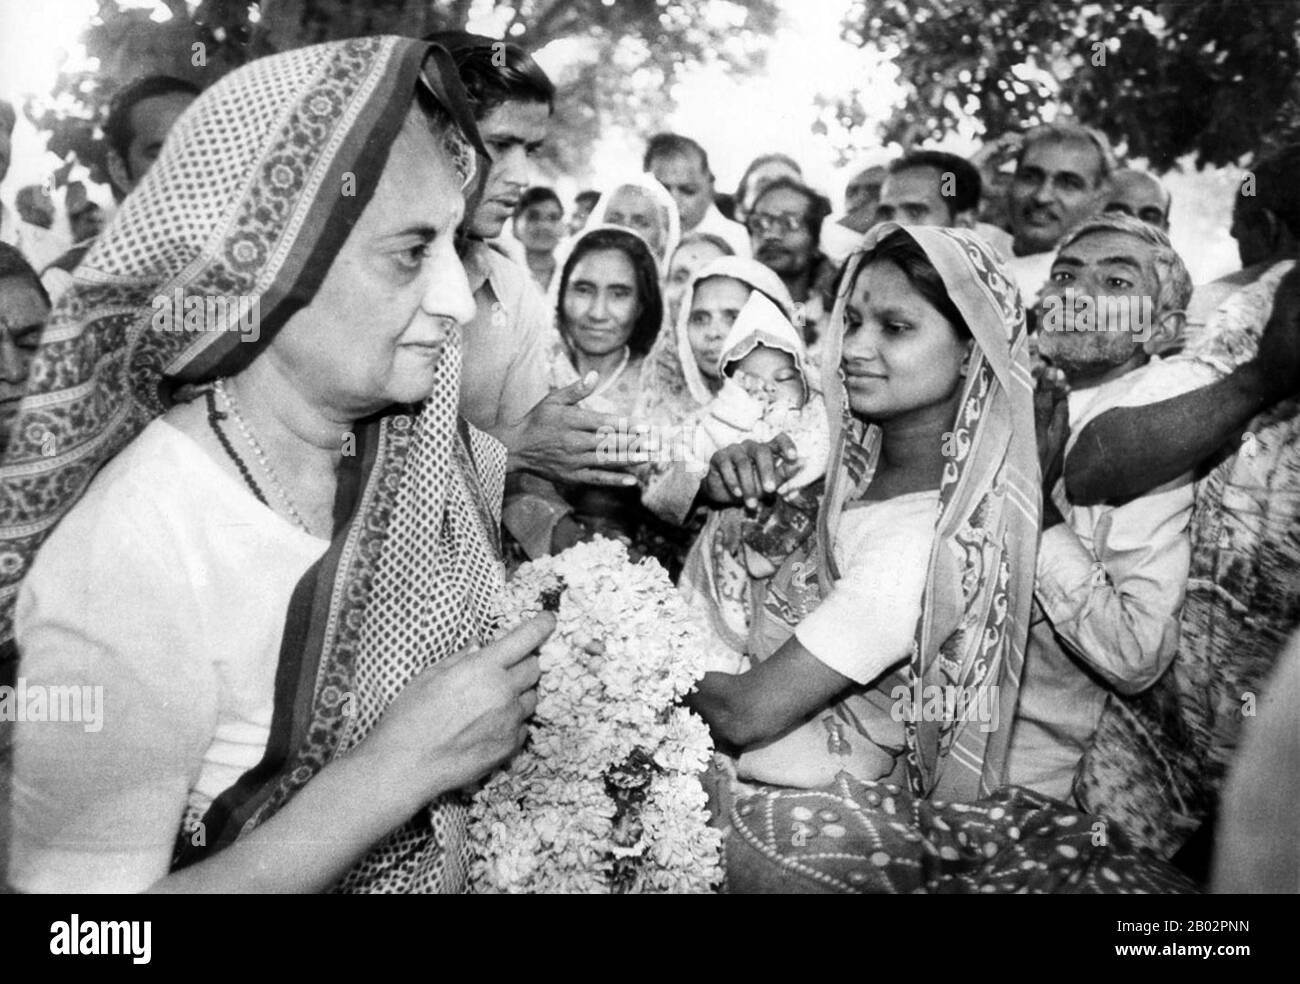 Indira Priyadarshini Gandhi (19. November 1917 - 31. Oktober 1984) war von 1966 bis 1977 drei Mal in Folge Premierministerin der Republik Indien und von 1980 bis zu ihrer Ermordung 1984 eine vierte Amtszeit, insgesamt fünfzehn Jahre. Sie ist bis heute die einzige weibliche Premierministerin Indiens. Sie ist die weltweit am längsten amtierende Premierministerin. Stockfoto